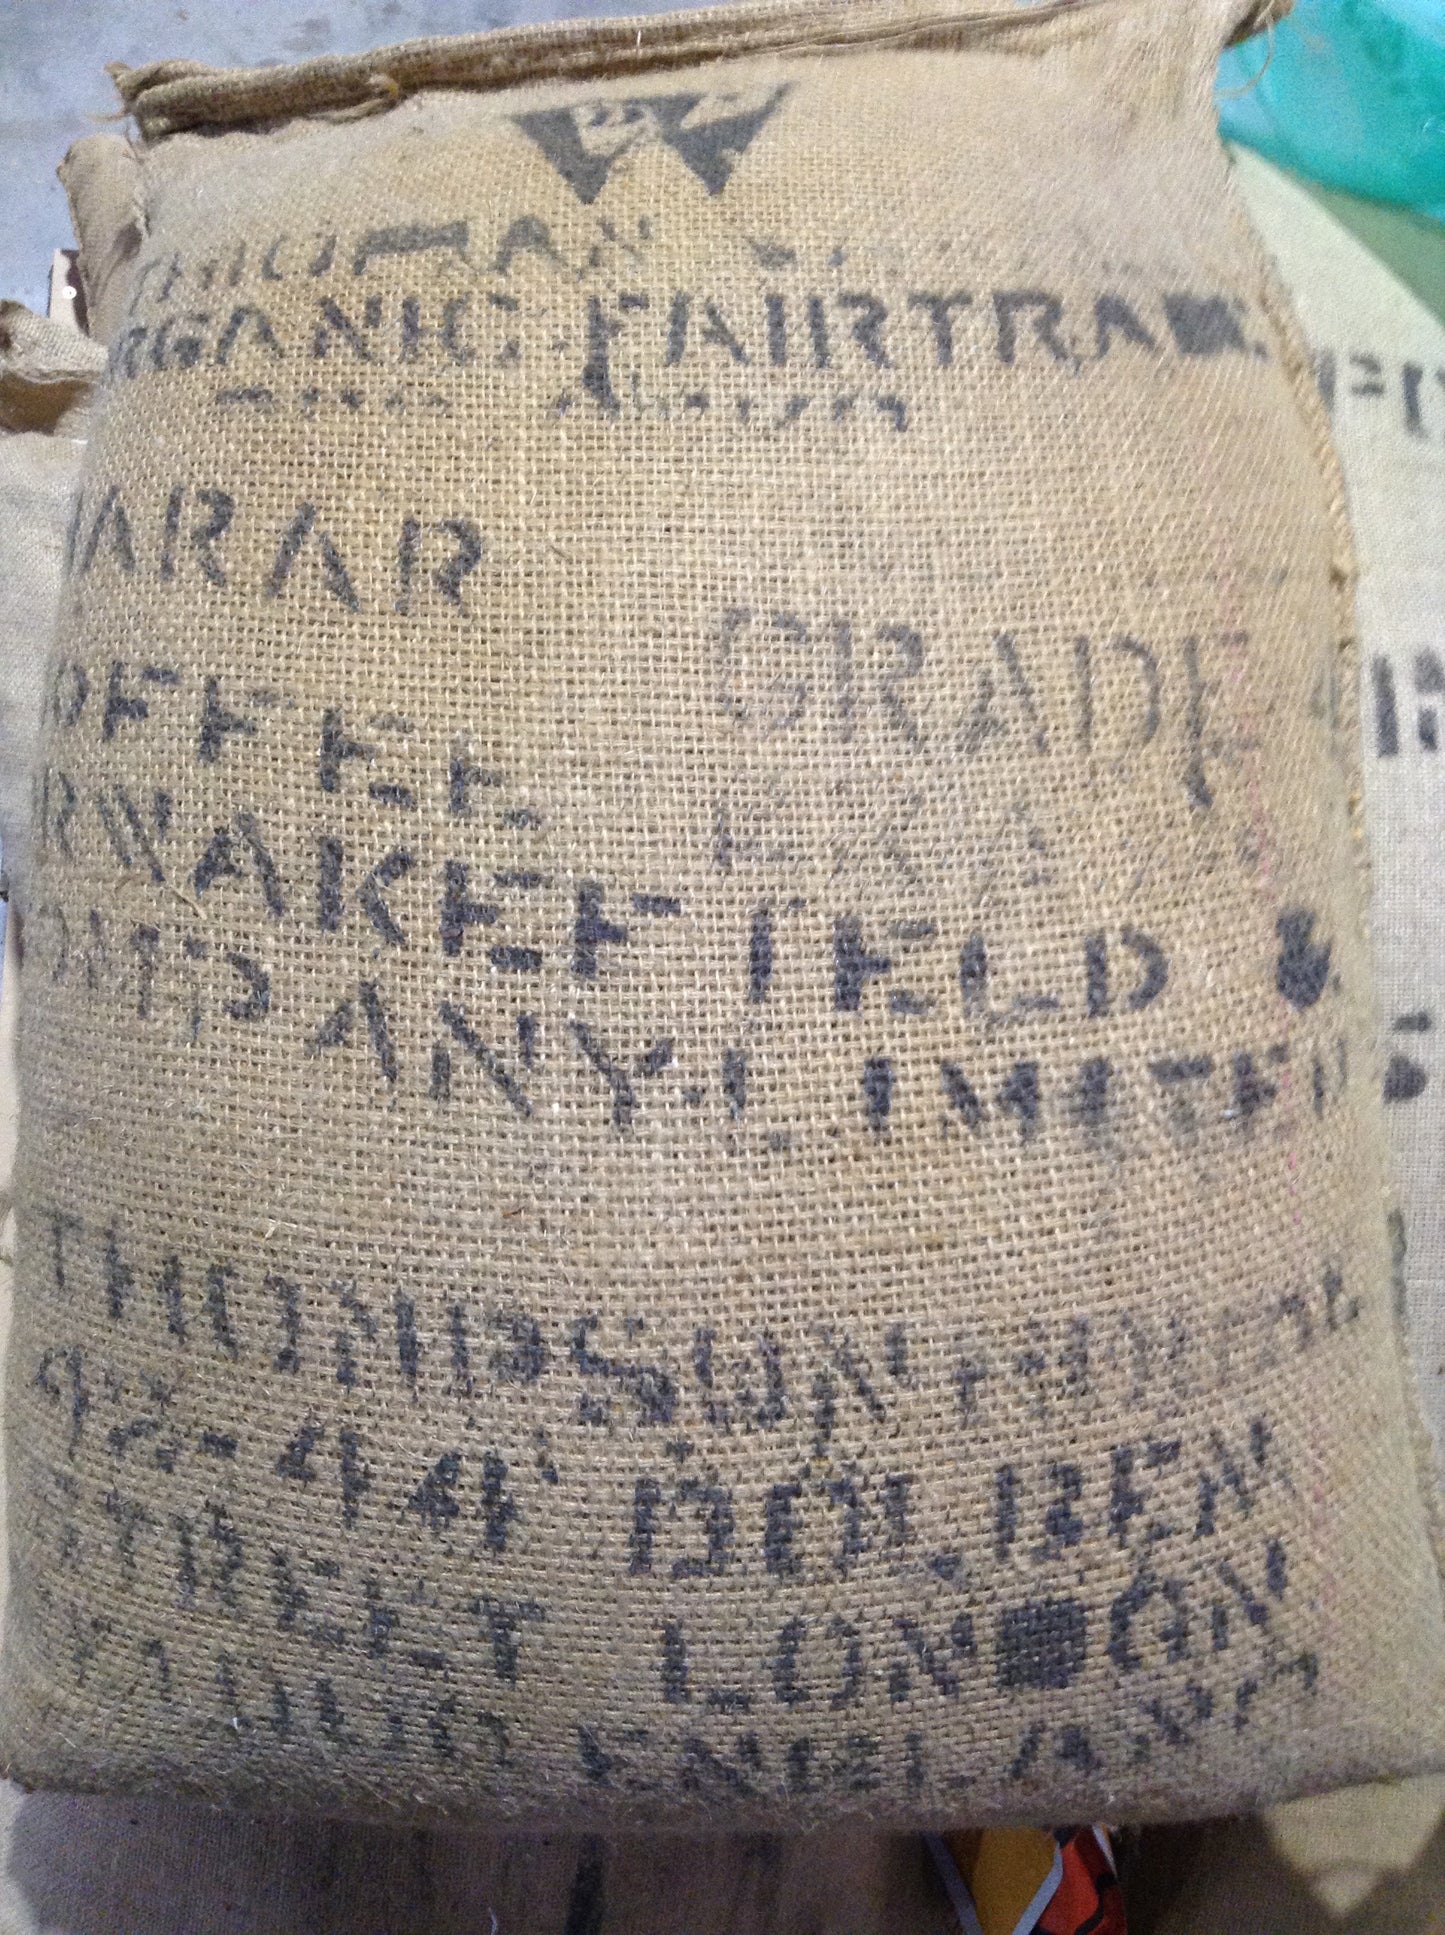 ETHIOPIAN - FAIR TRADE ORGANIC GRADE 4 HARRAR 14 Y.O. AGED COFFEE